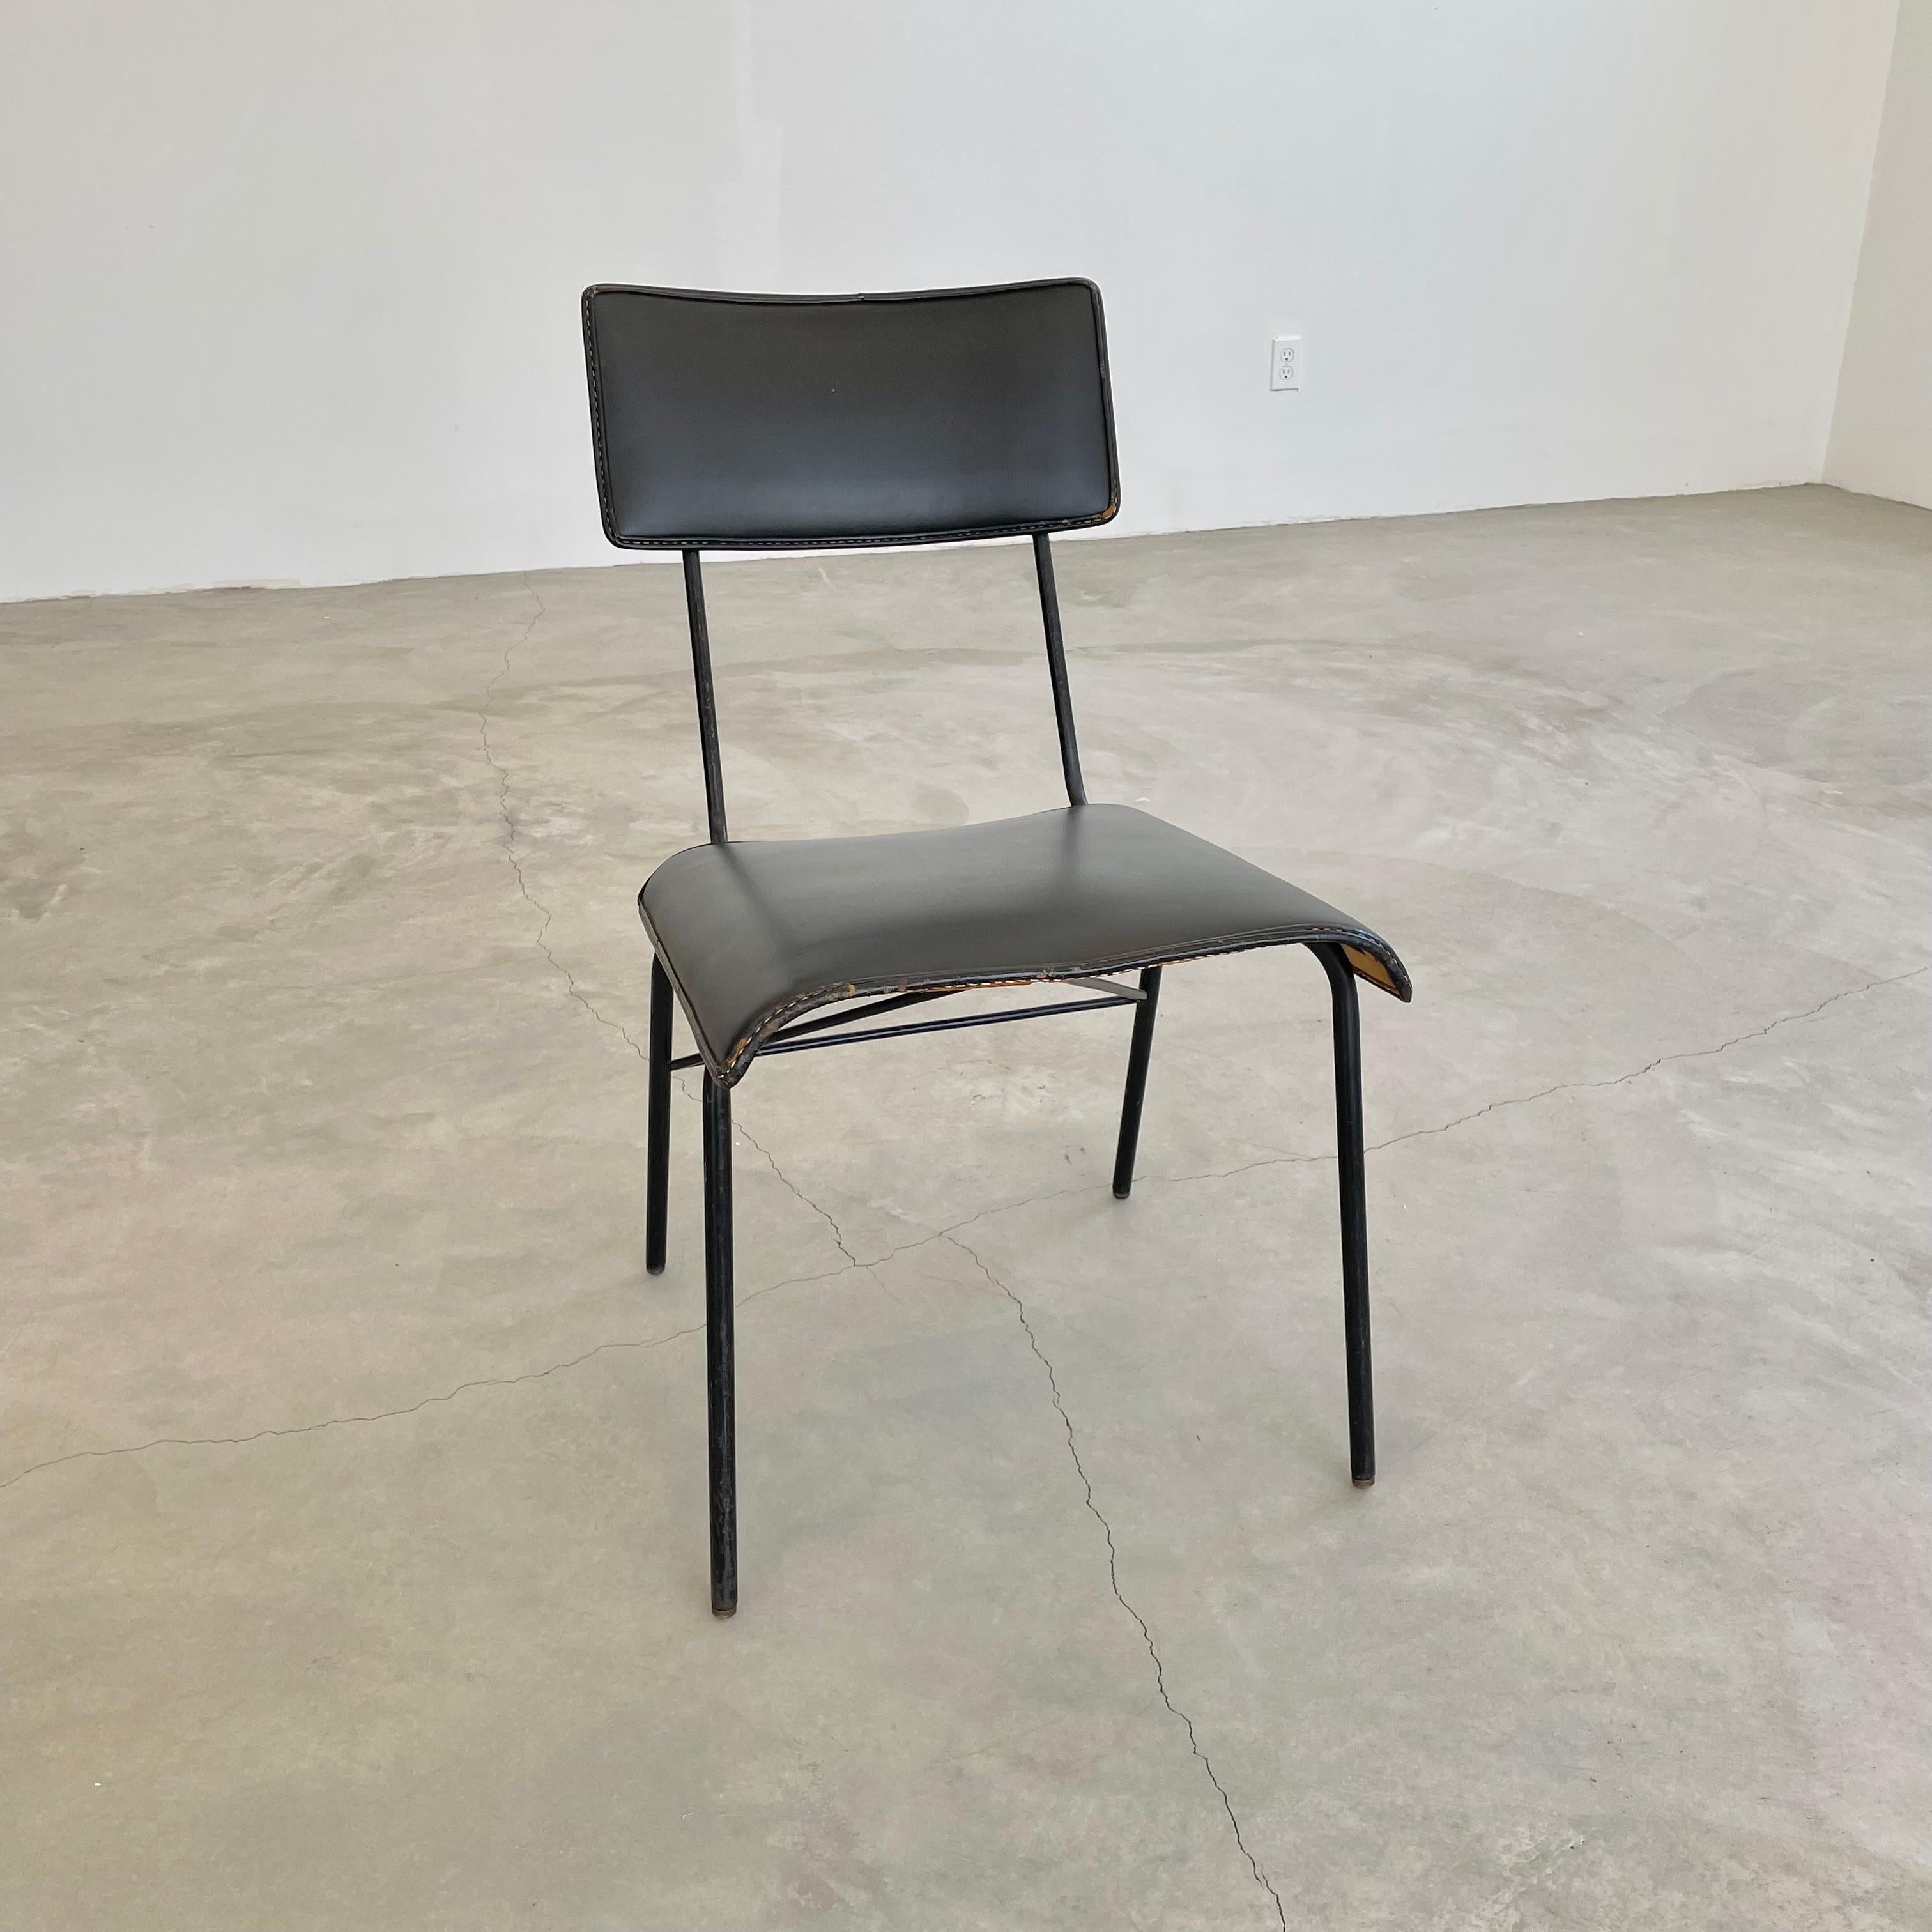 Wunderschöner Stuhl des französischen Designers Jacques Adnet. Schwarzes Eisengestell mit schwarzem Sitz und Rückenlehne aus Leder. Der Stuhl steht auf Messingfüßen und hat eine dreieckige Stütze unter dem Sitz, die an den hinteren Beinen und dem